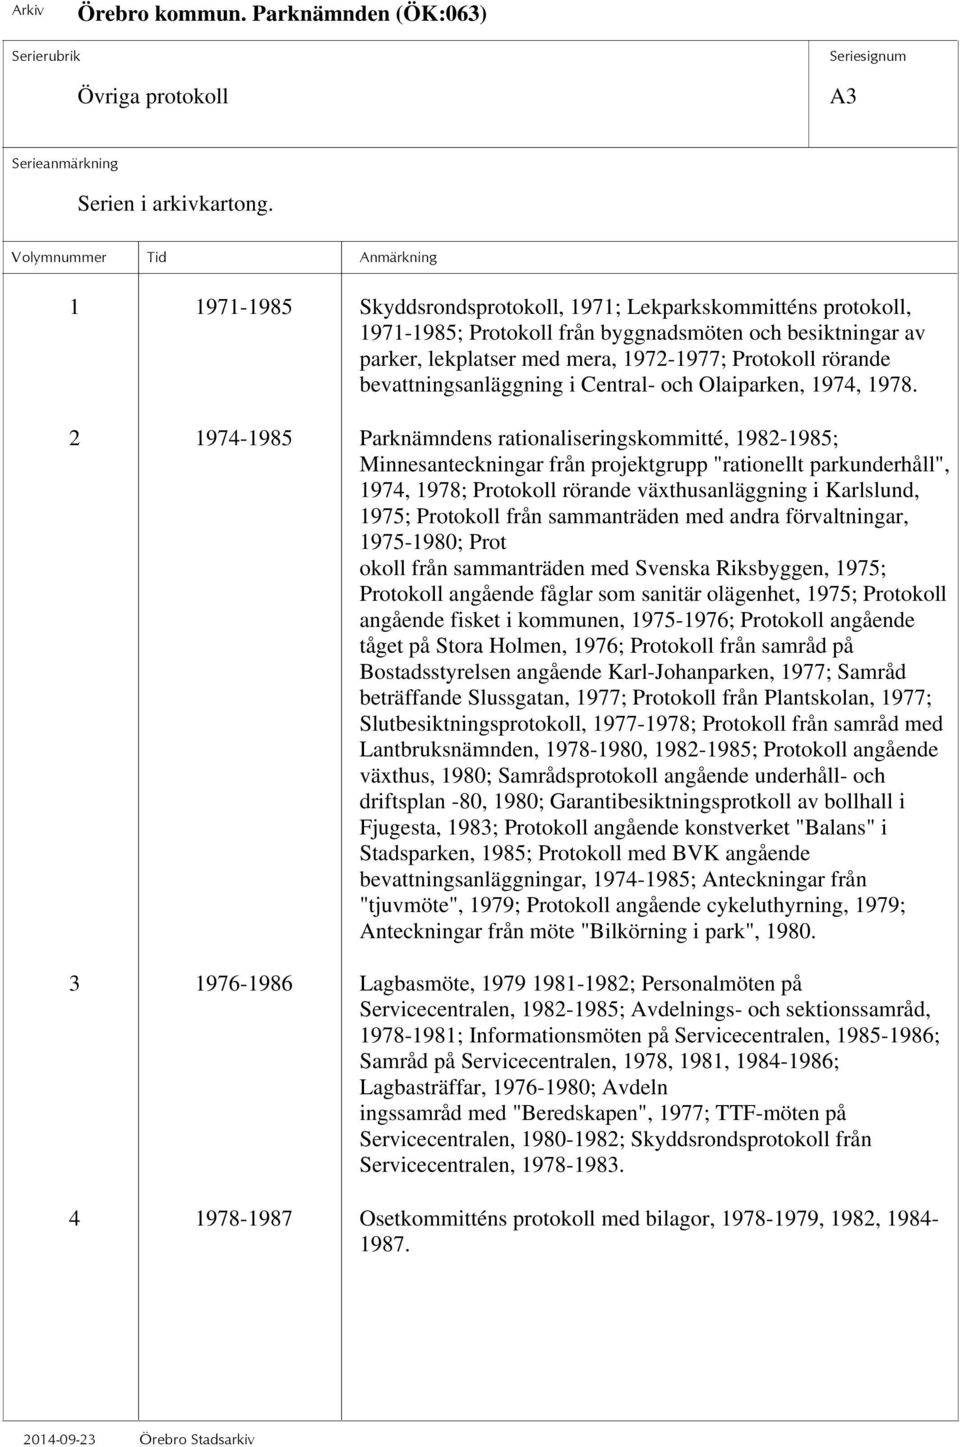 2 1974-1985 Parknämndens rationaliseringskommitté, 1982-1985; Minnesanteckningar från projektgrupp "rationellt parkunderhåll", 1974, 1978; Protokoll rörande växthusanläggning i Karlslund, 1975;